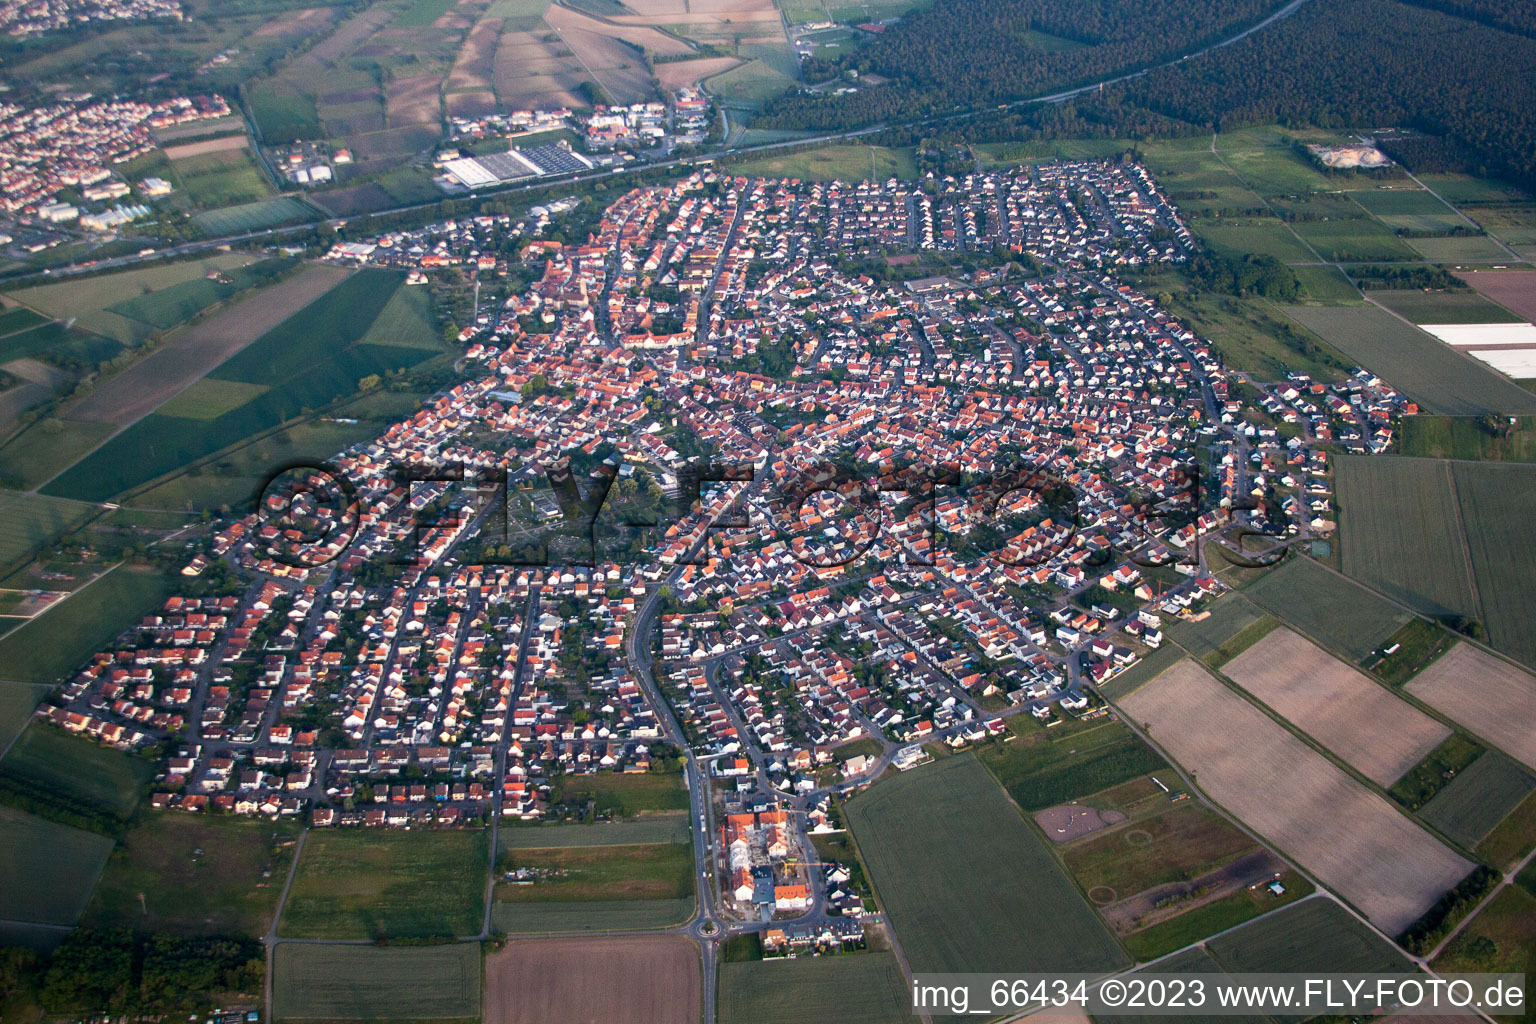 Ortsteil Sankt Leon in St. Leon-Rot im Bundesland Baden-Württemberg, Deutschland aus der Drohnenperspektive